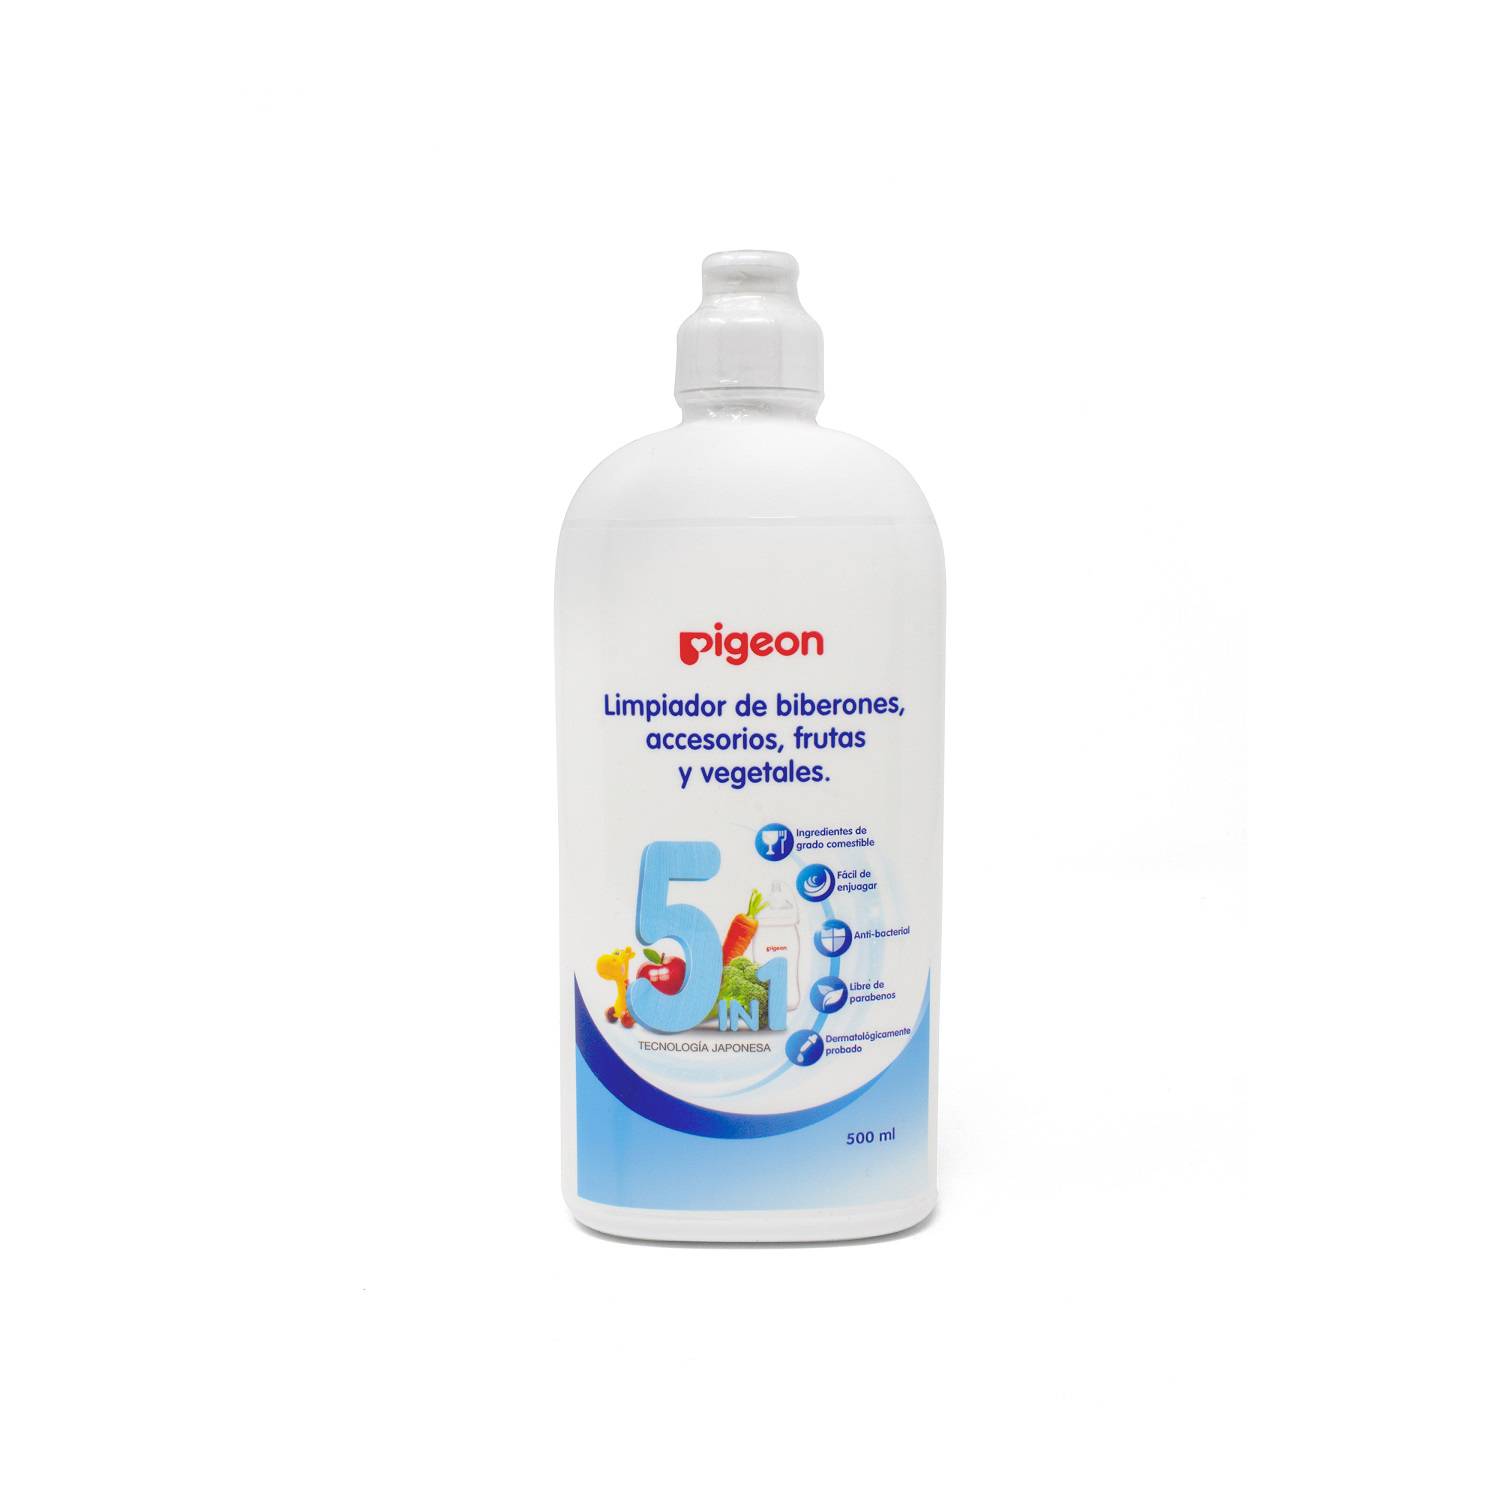 Detergente para biberones 500ml - NUK